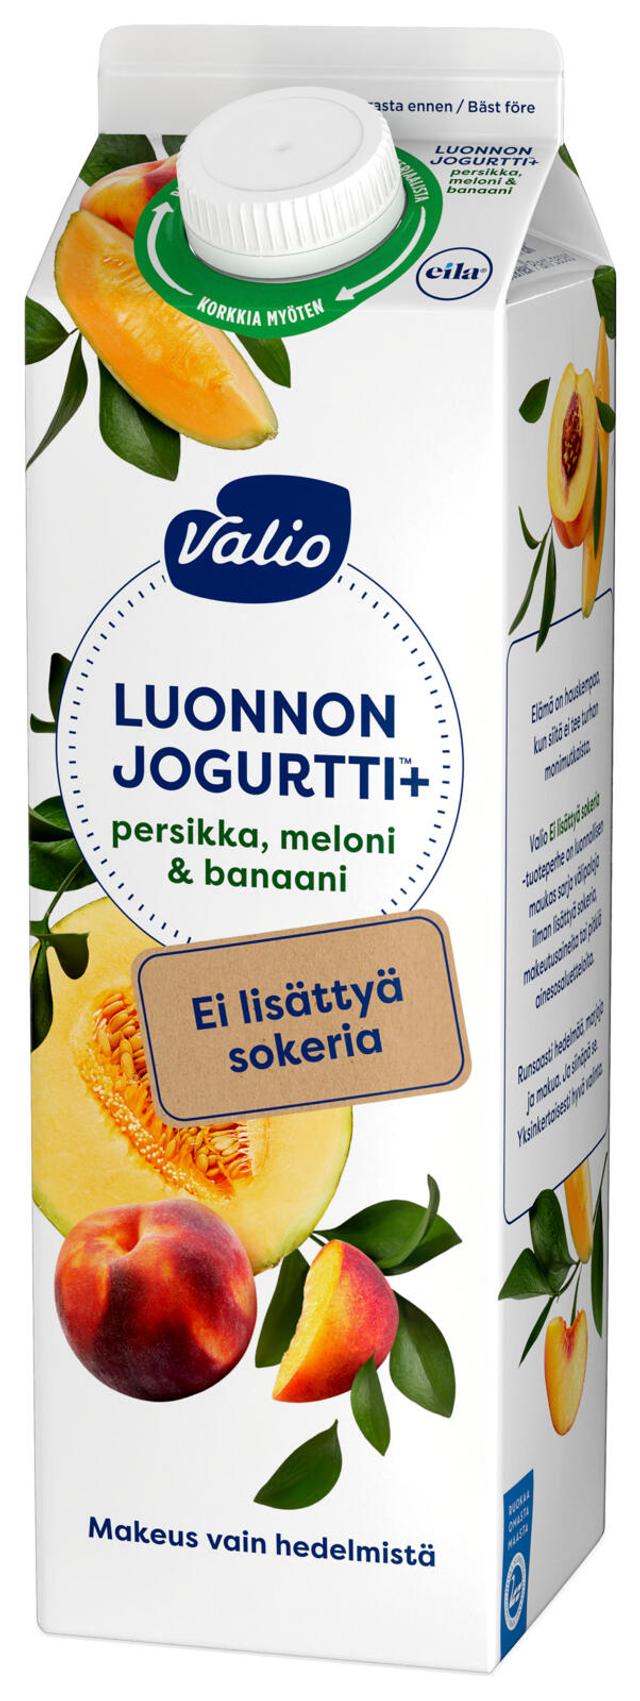 Valio Luonnonjogurtti+™ persikka, meloni & banaani 1 kg ei lisättyä sokeria, laktoositon